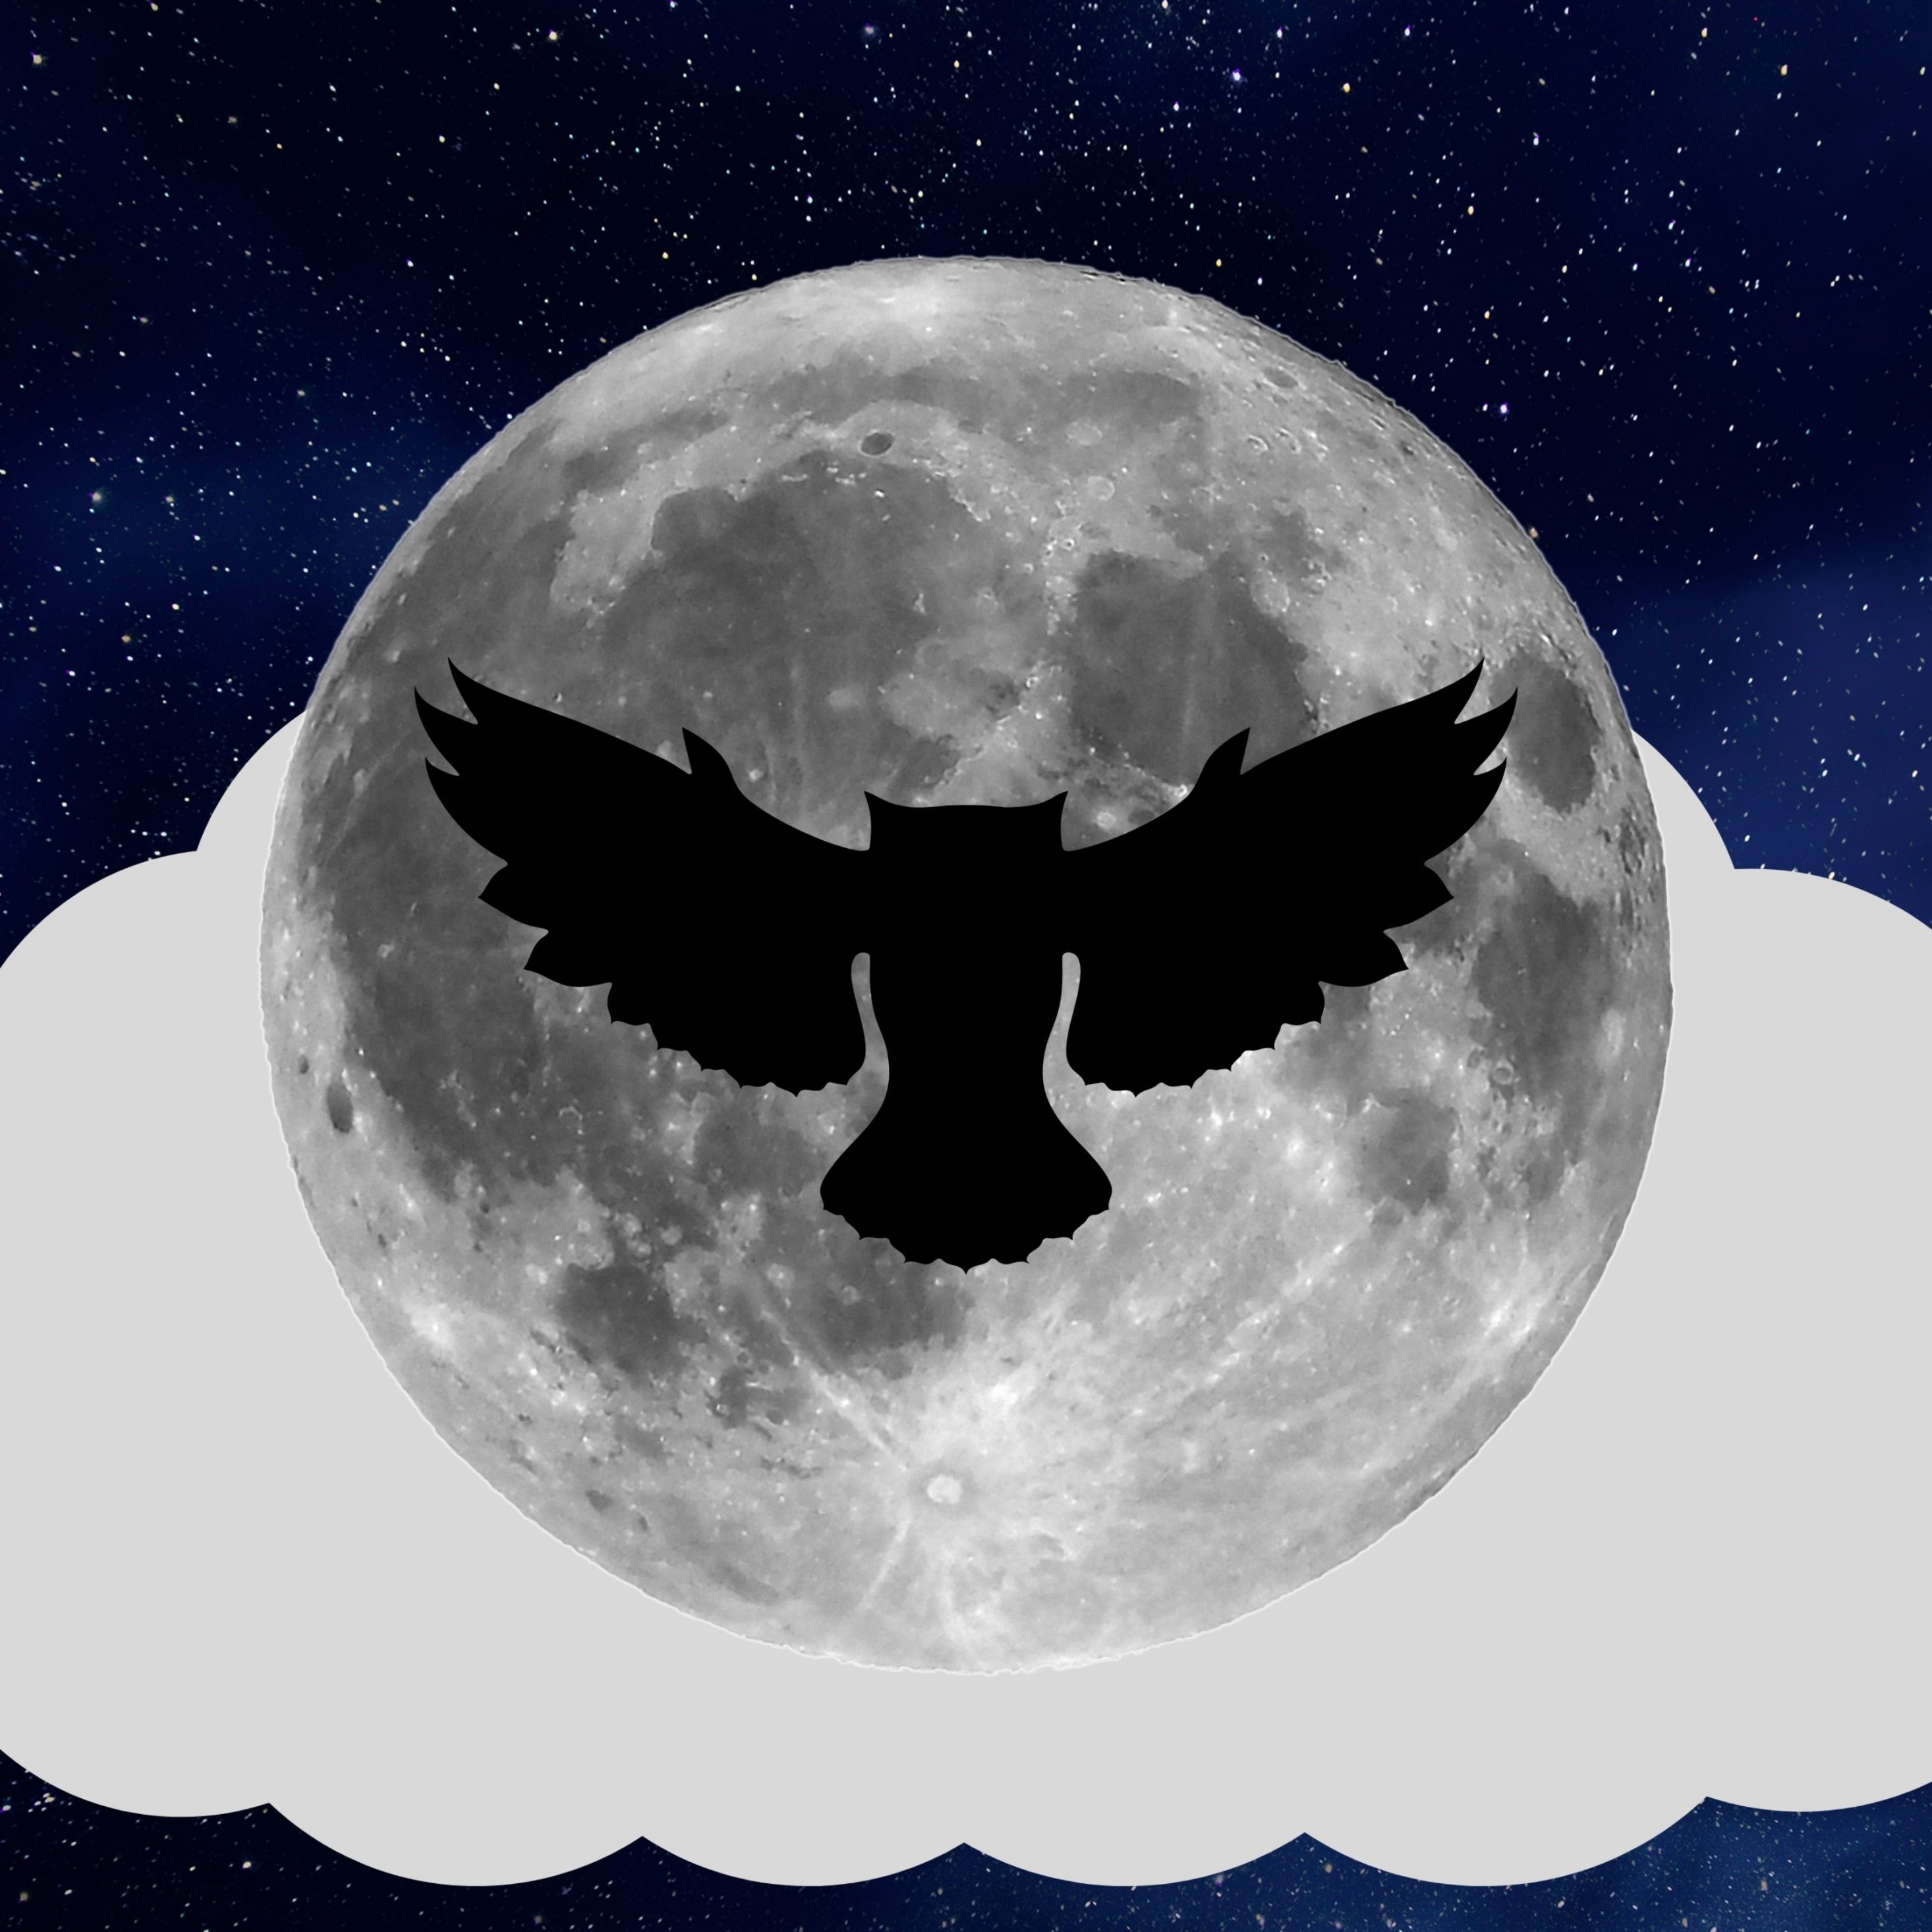 2932x2932 iPad Pro wallpaper 4k Night Owl Full Moon iPad Wallpaper 2932x2932 pixels resolution